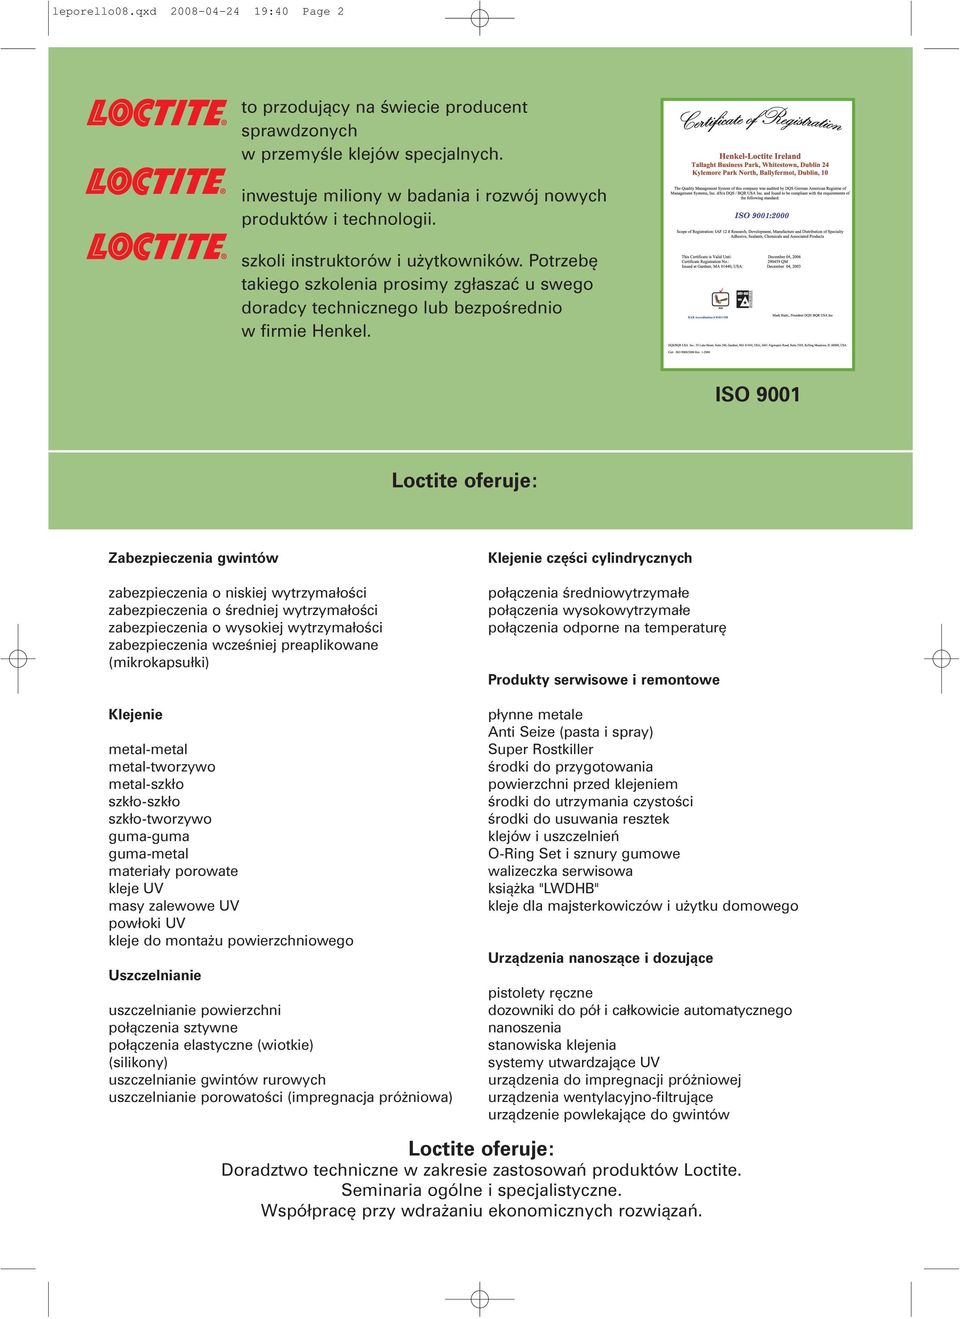 ISO 9001 Loctite oferuje: Zabezpieczenia gwintów zabezpieczenia o niskiej wytrzymałości zabezpieczenia o średj wytrzymałości zabezpieczenia o wysokiej wytrzymałości zabezpieczenia wcześj